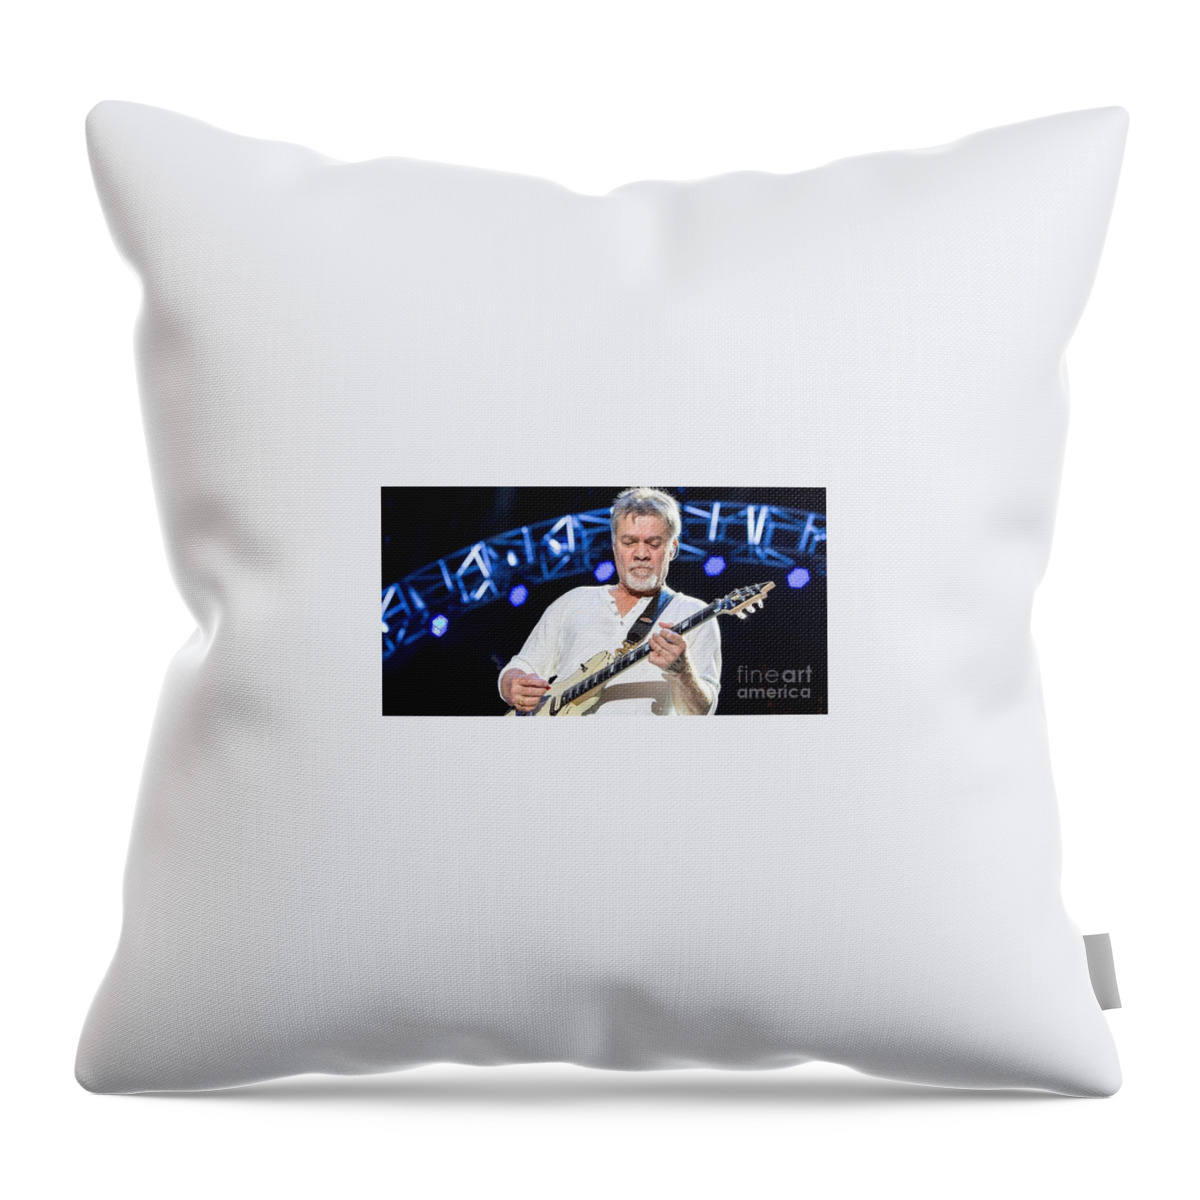 Eddie Throw Pillow featuring the photograph Eddie Van Halen by Action